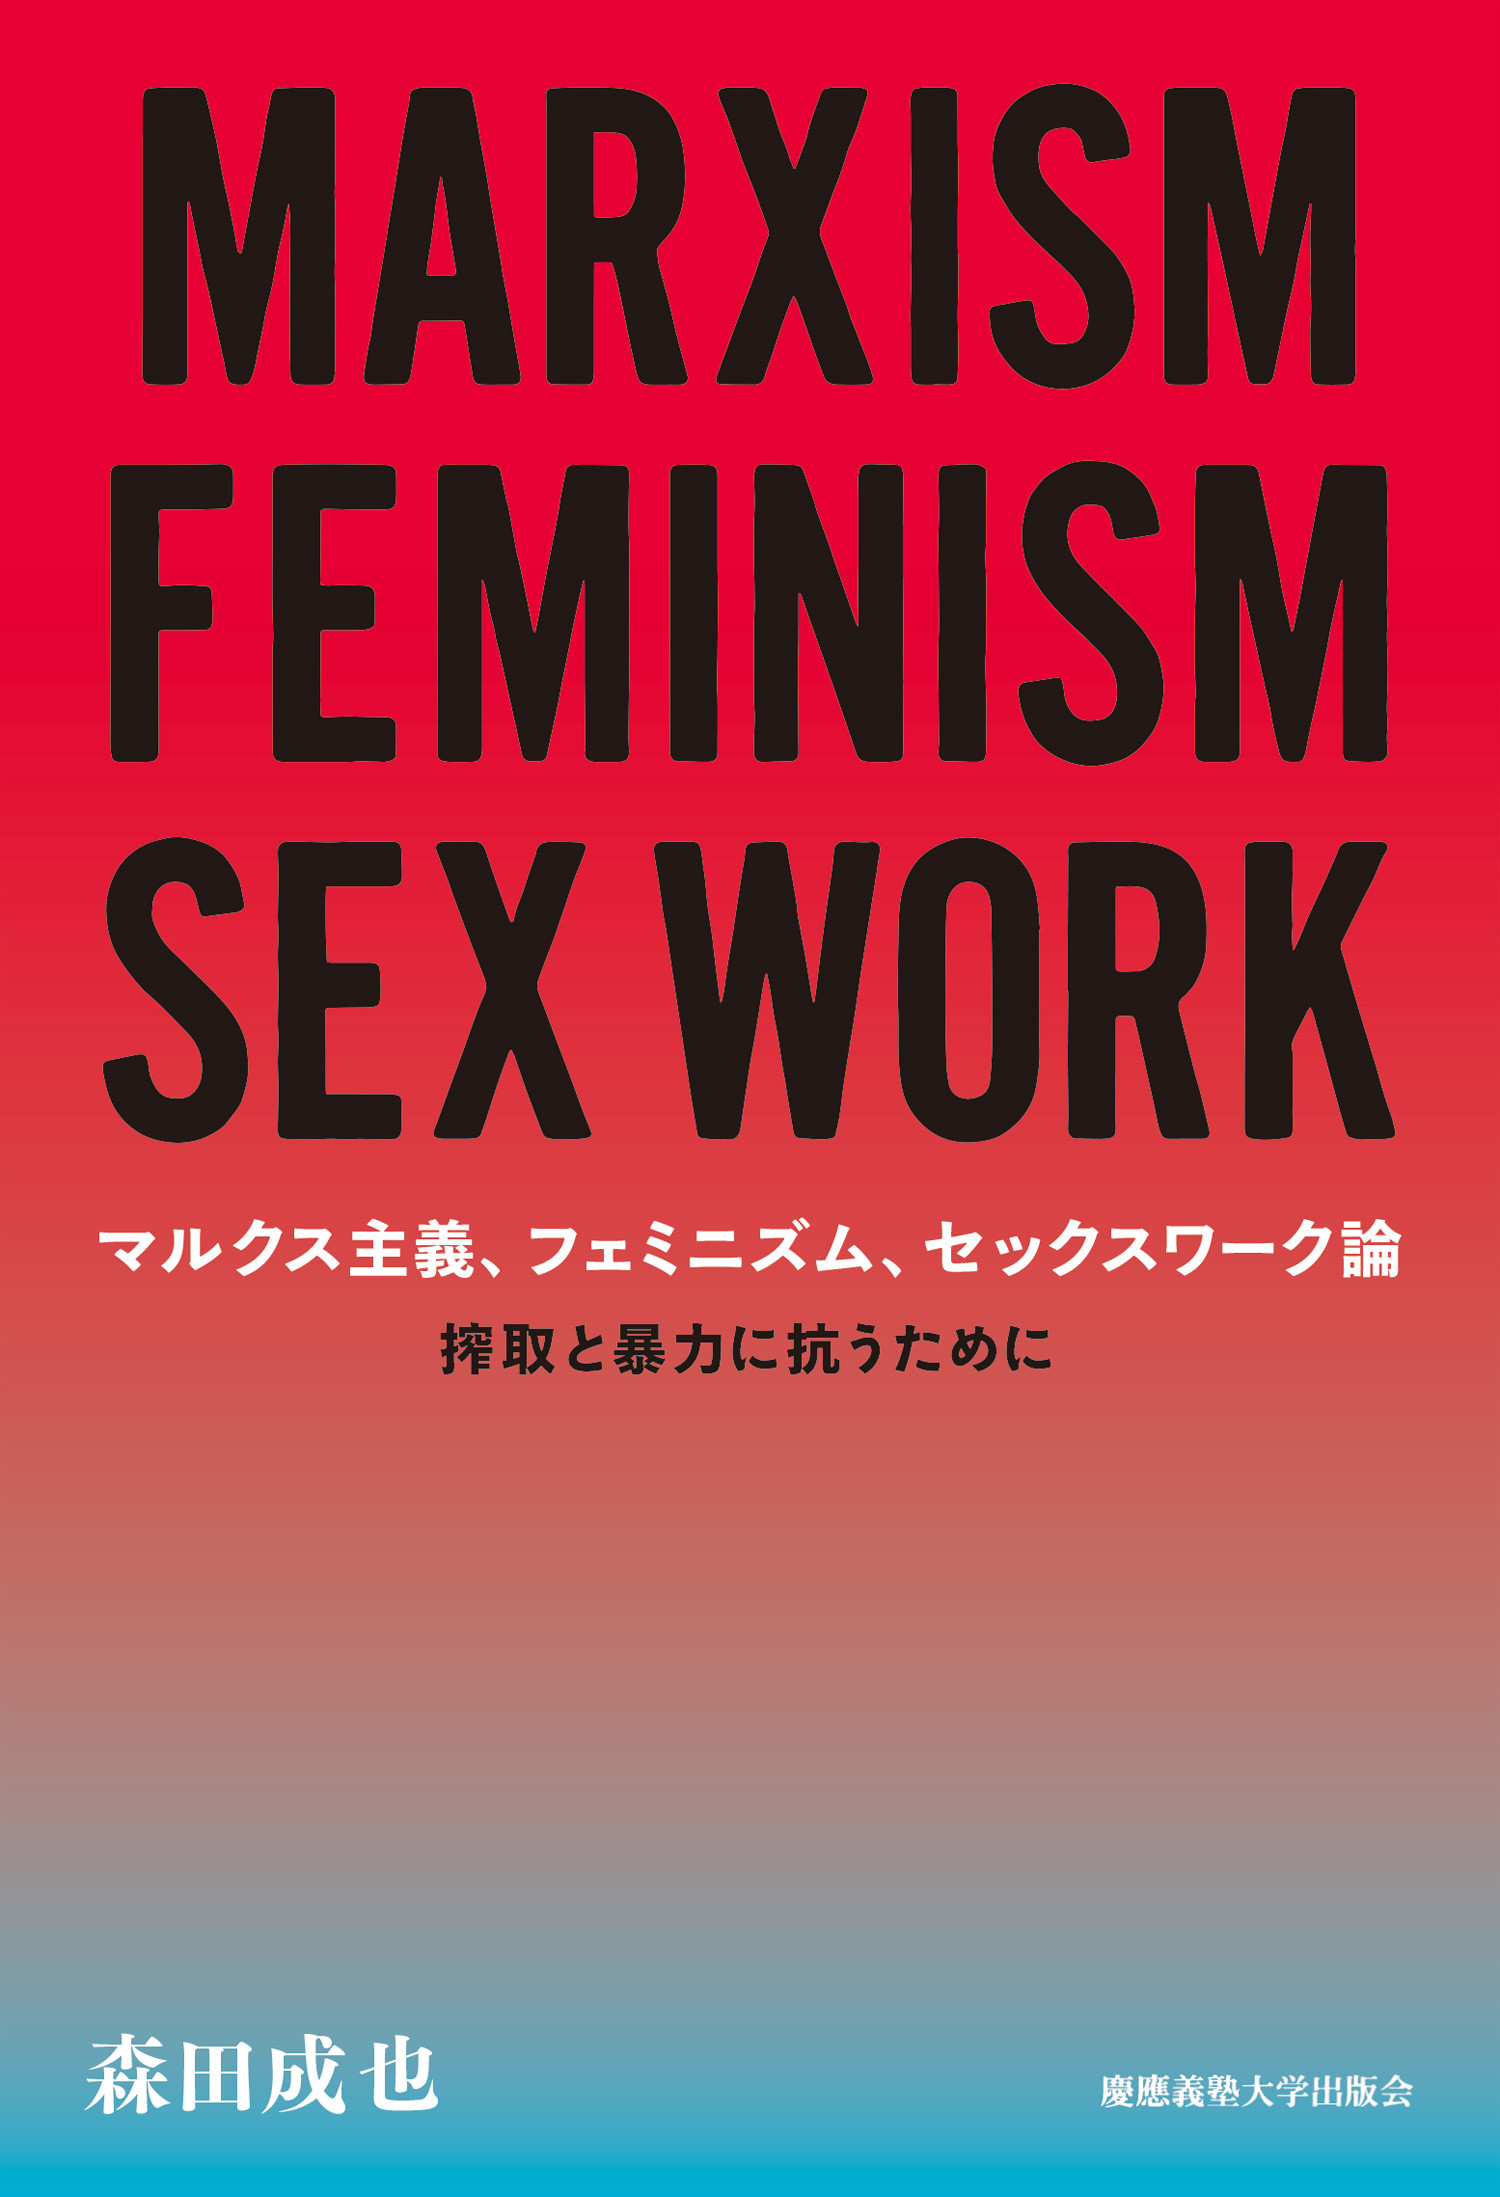 マルクス主義、フェミニズム、セックスワーク論の商品画像